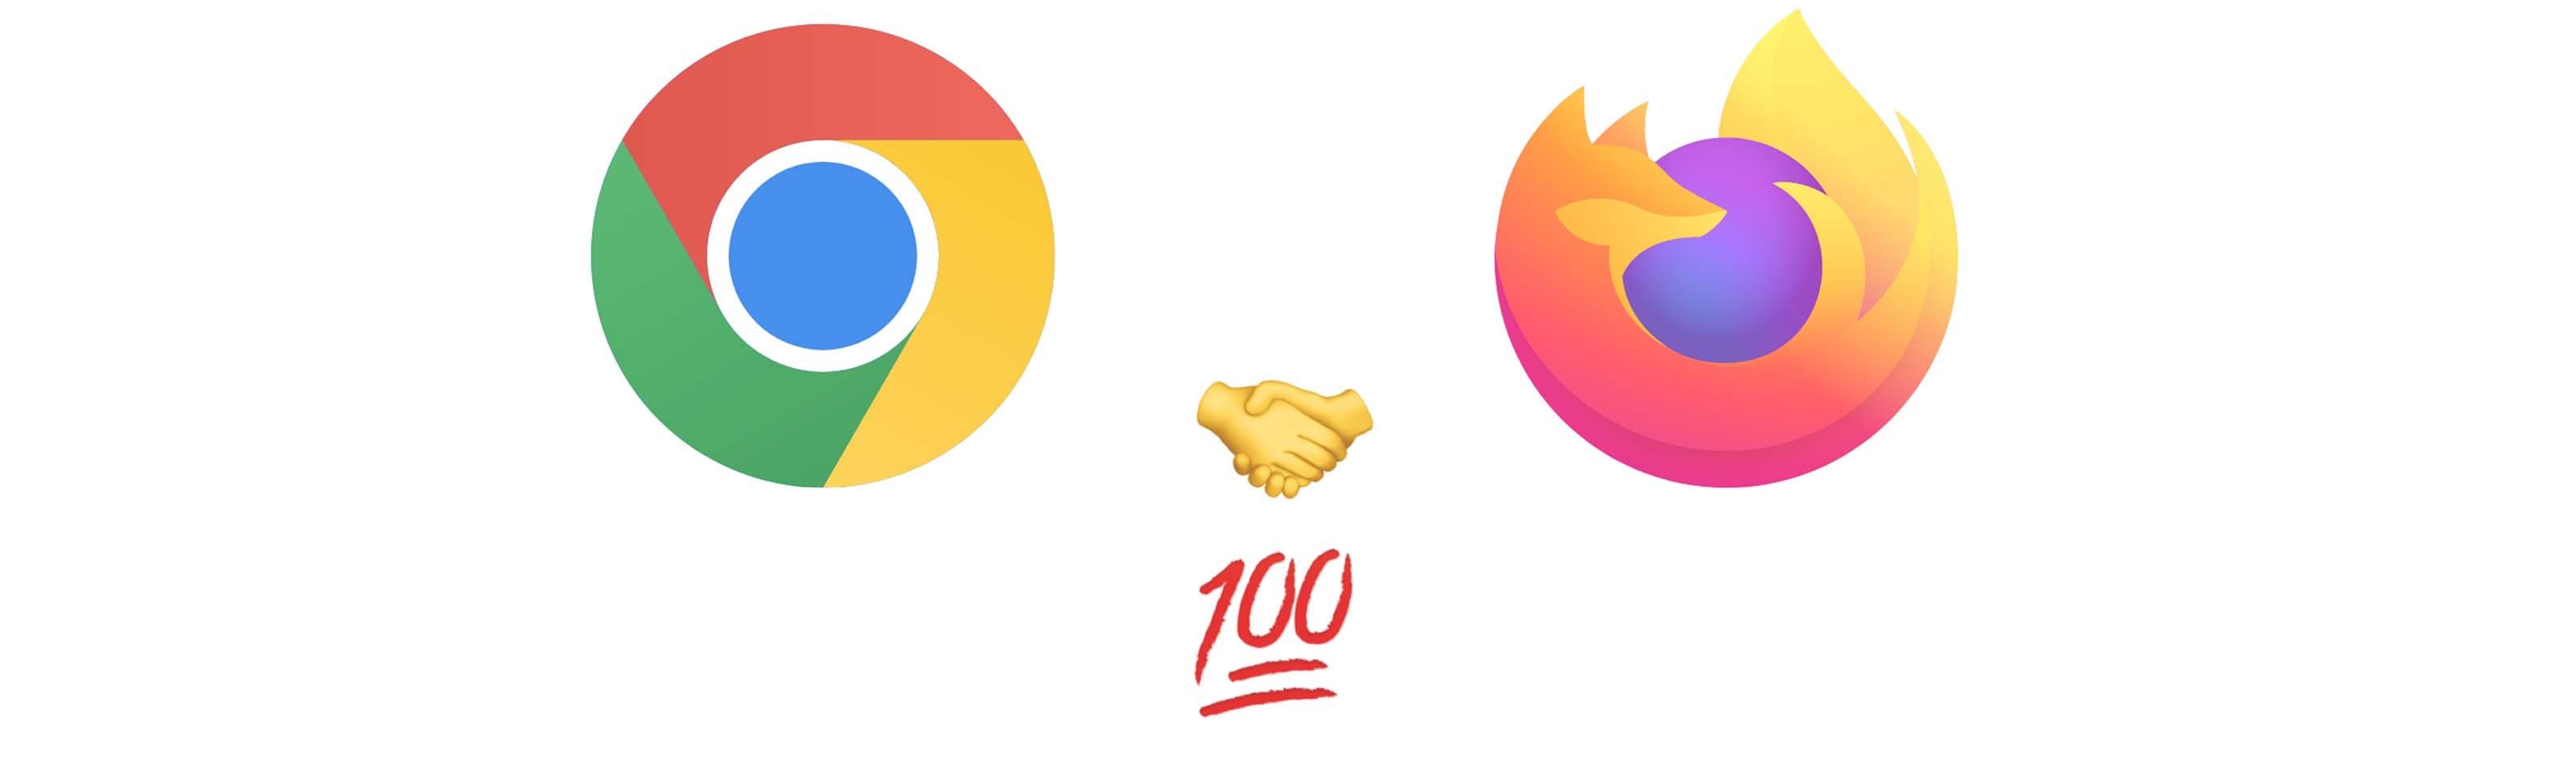 alt="Chrome x Firefox"